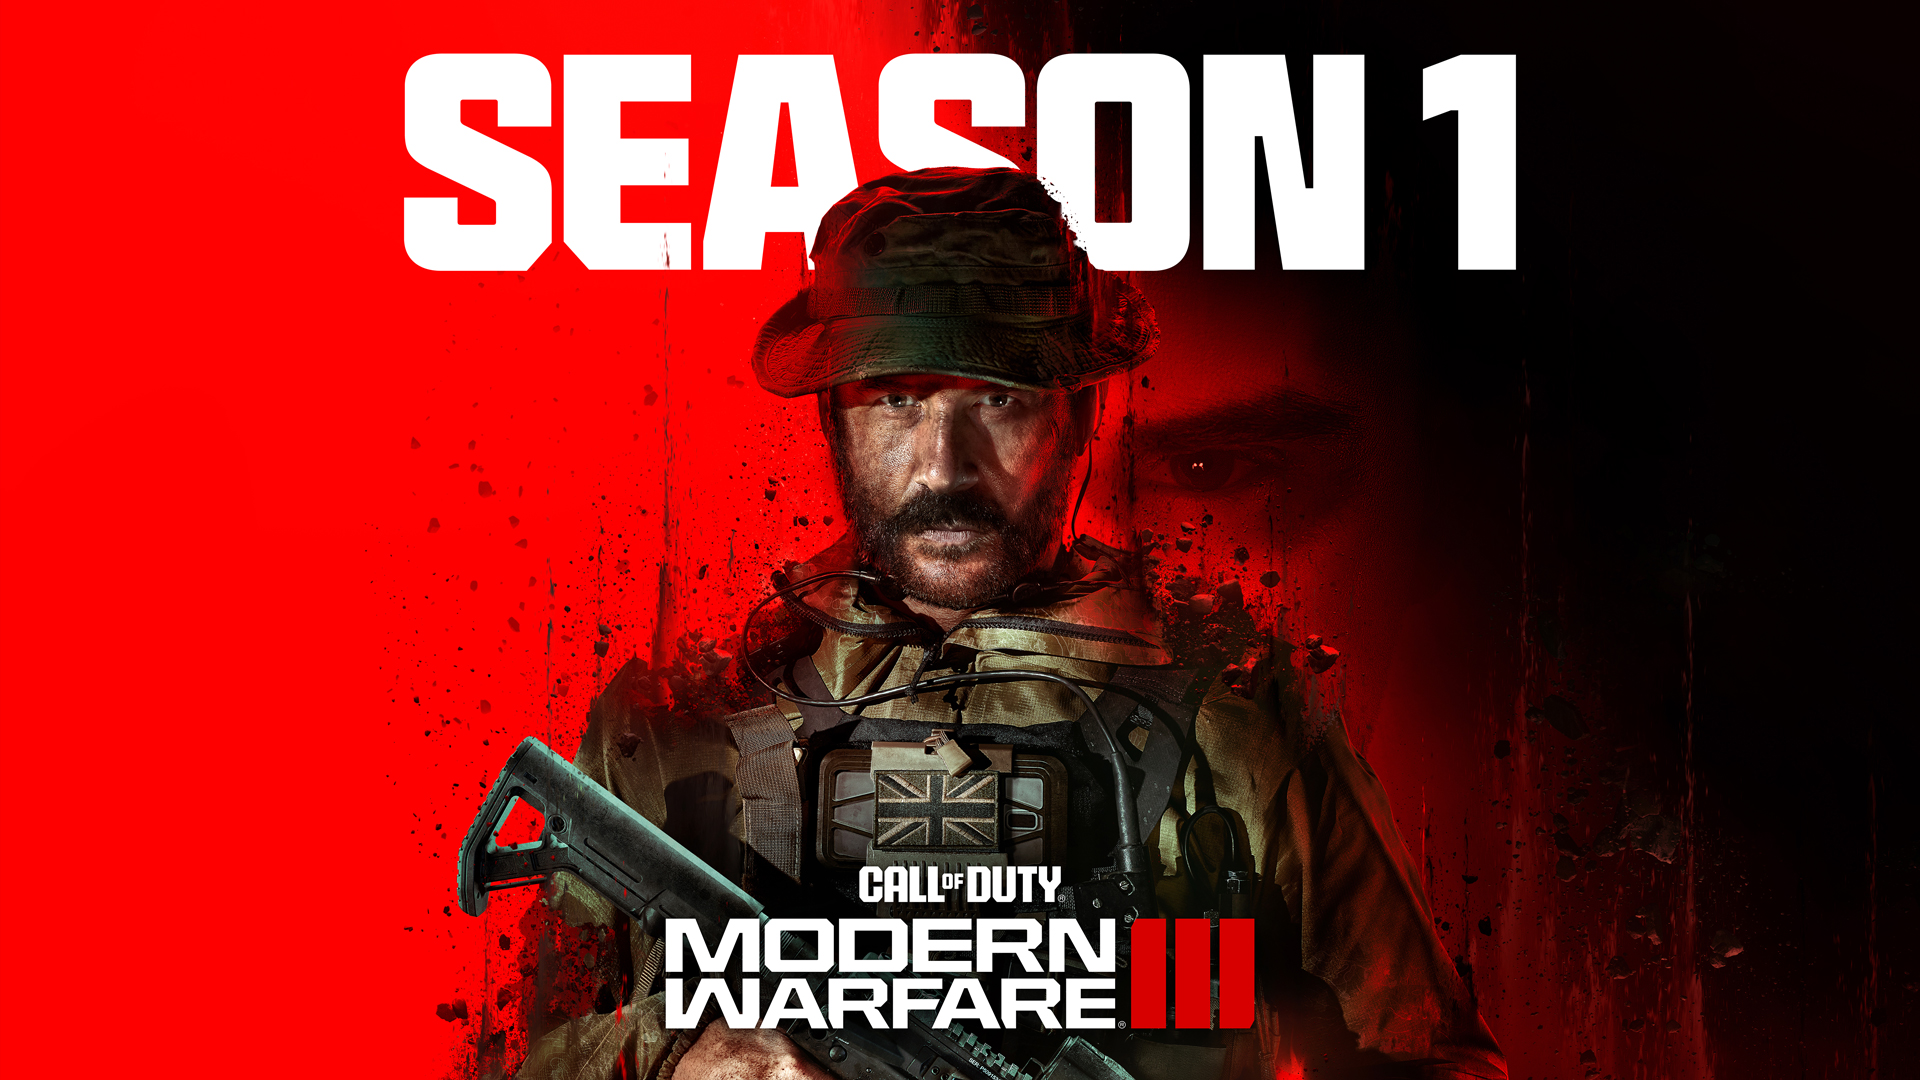 Season Six (Modern Warfare), Call of Duty Wiki